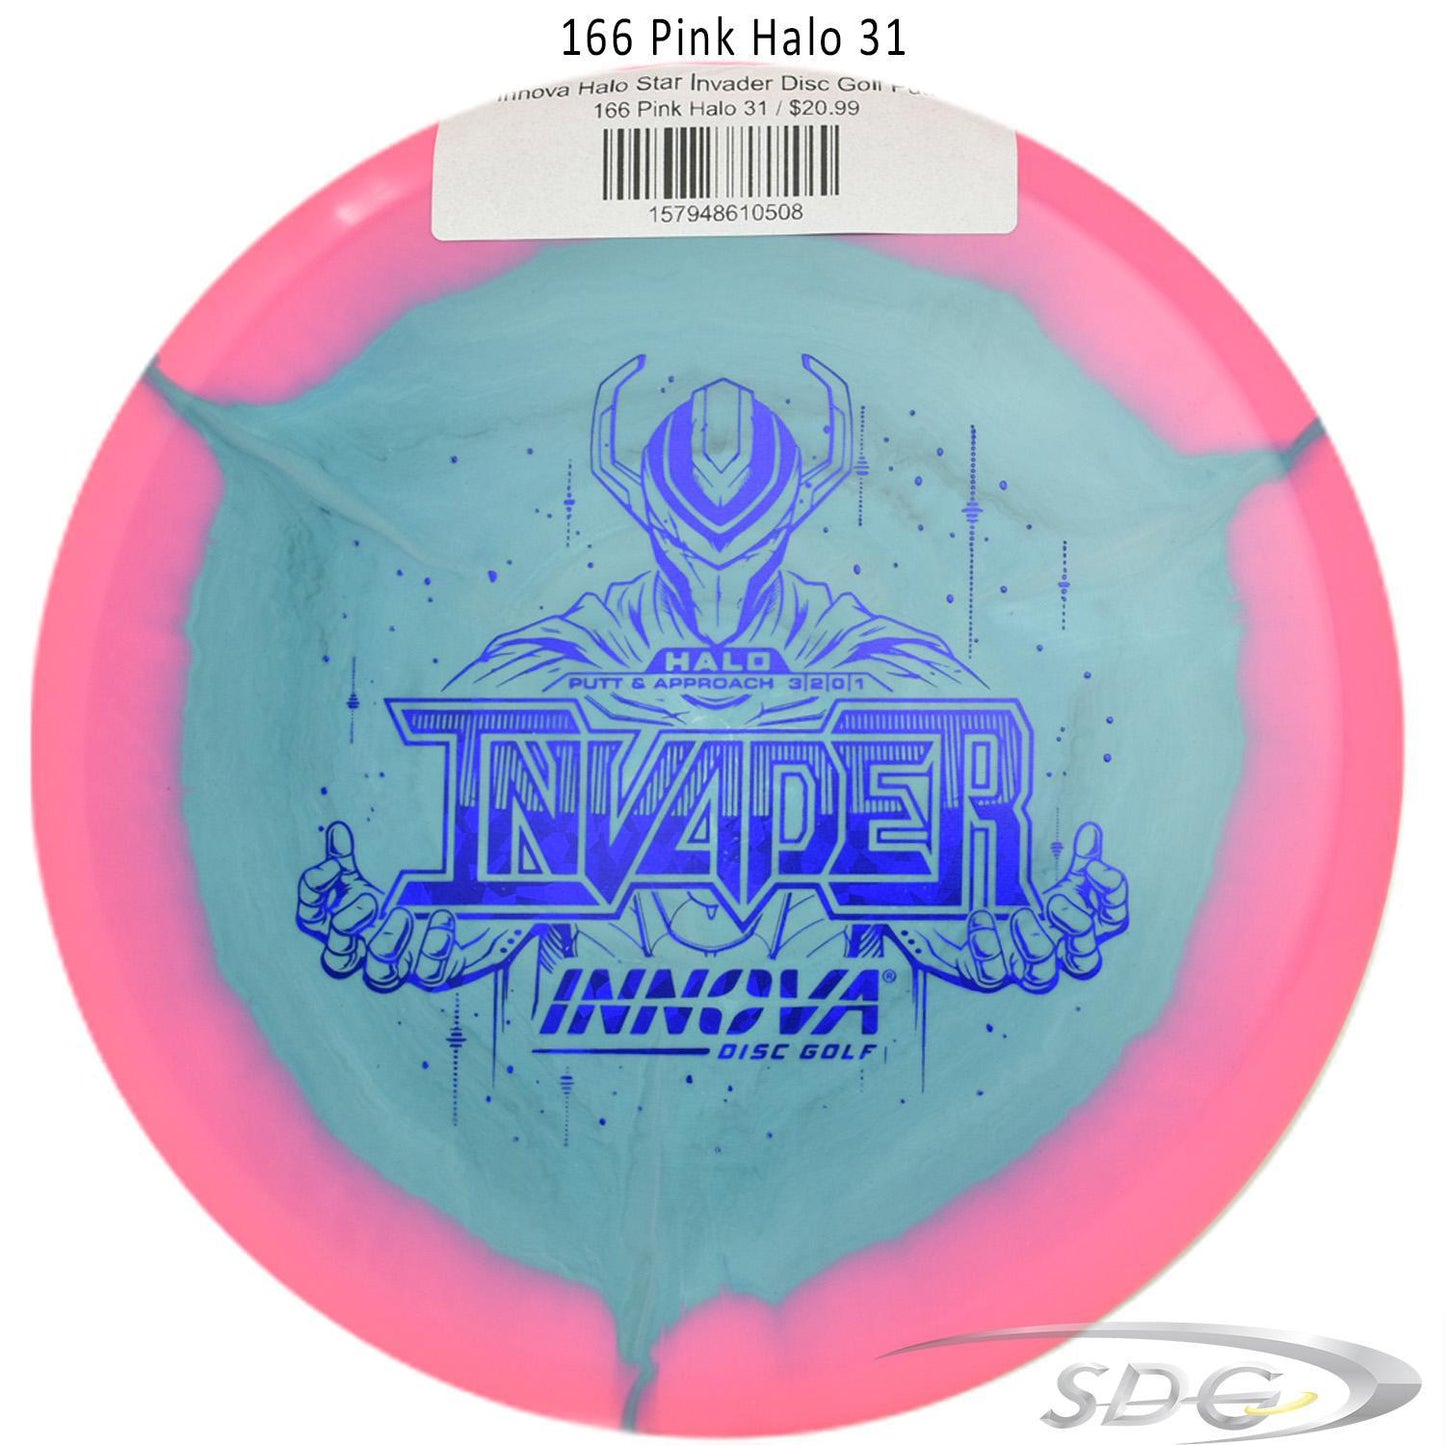 innova-halo-star-invader-disc-golf-putter 166 Pink Halo 31 